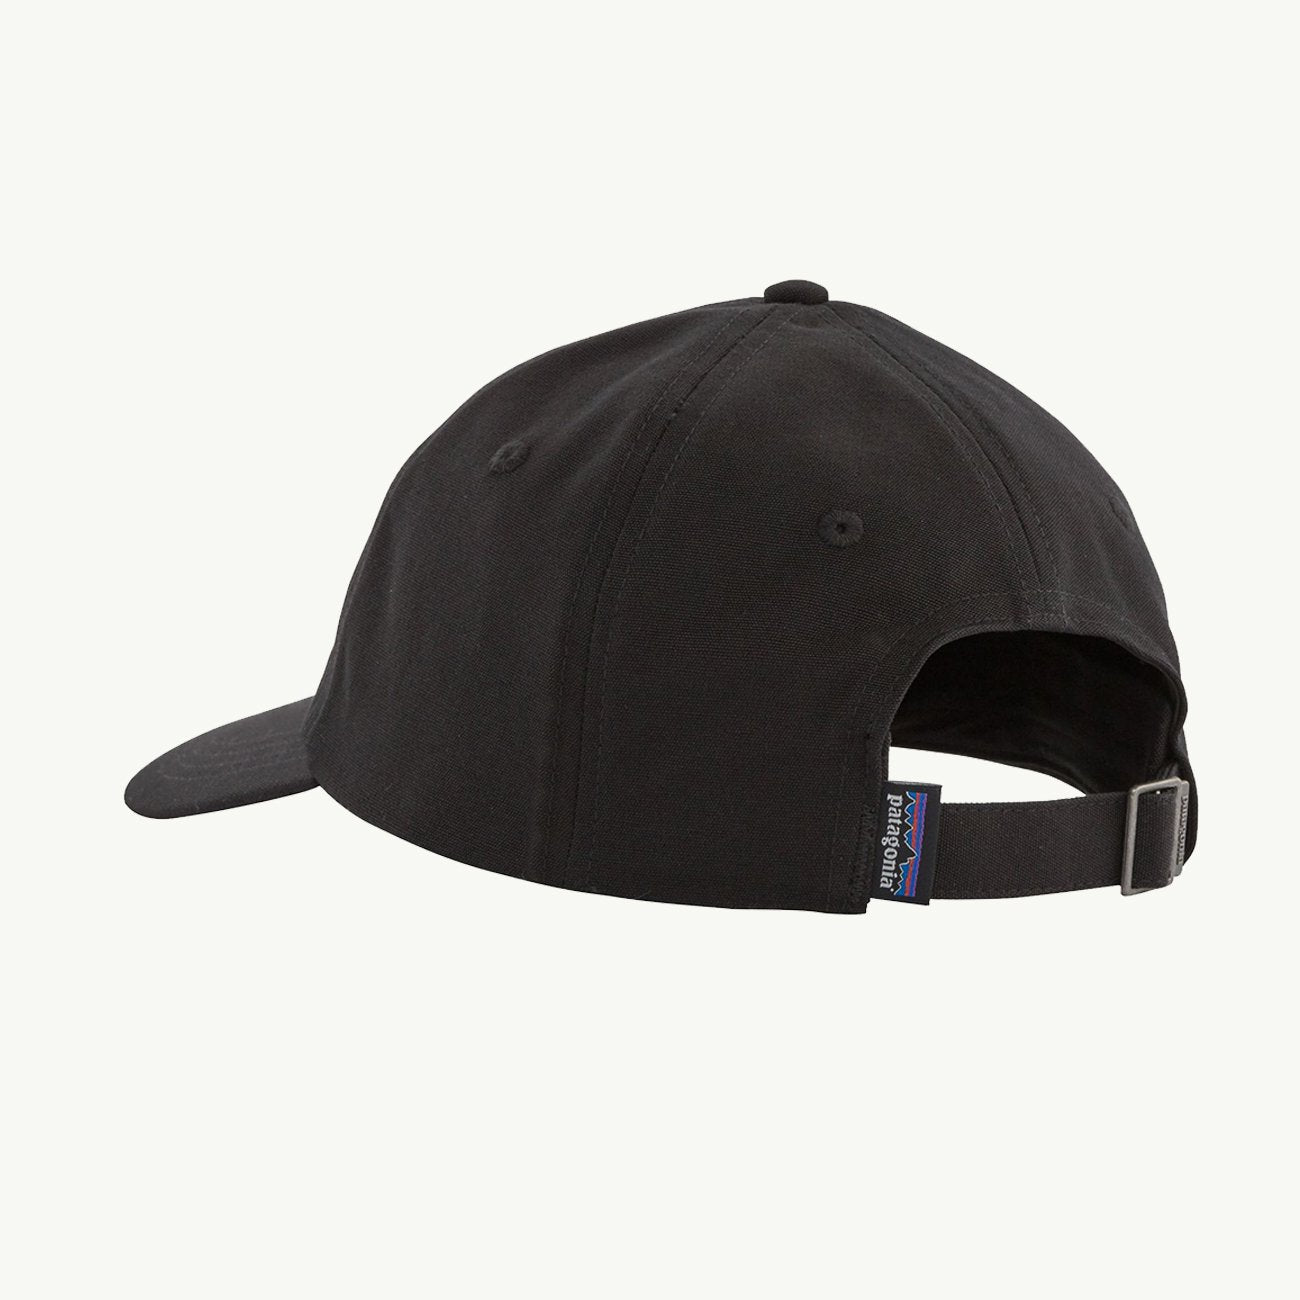 P6 Label Trad Cap - Black